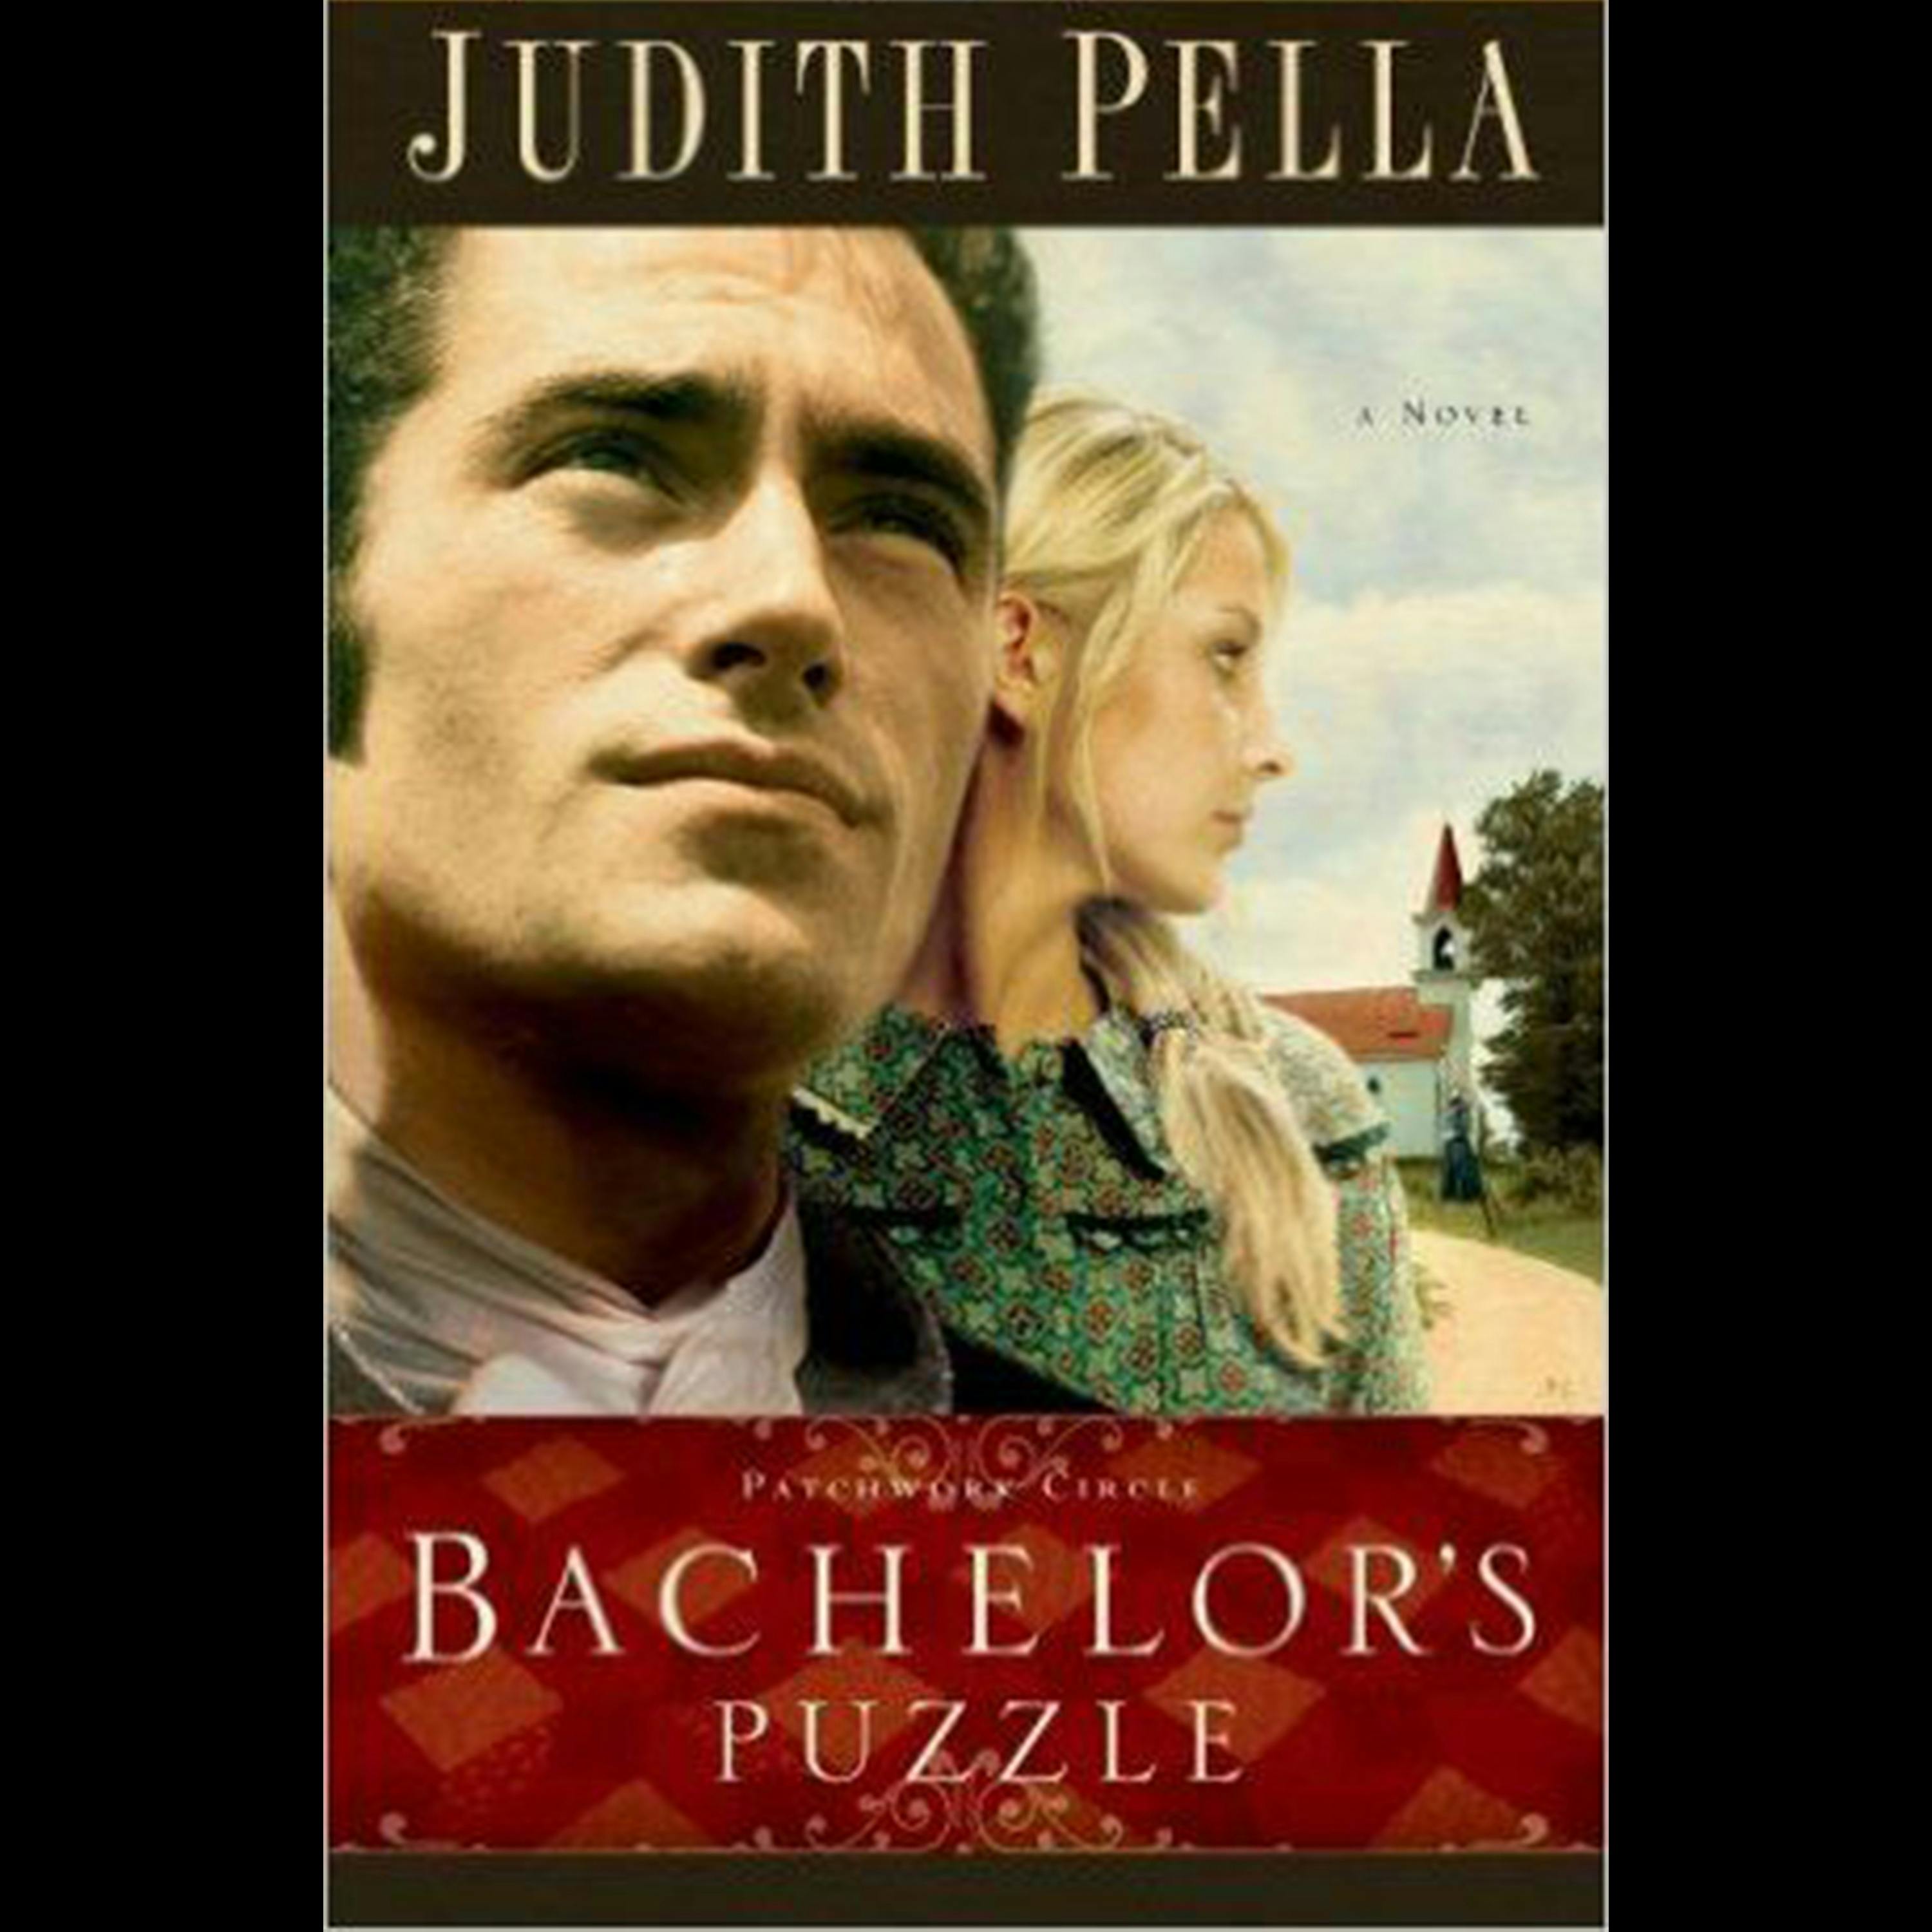 Bachelor's Puzzle: A Novel - Judith Pella